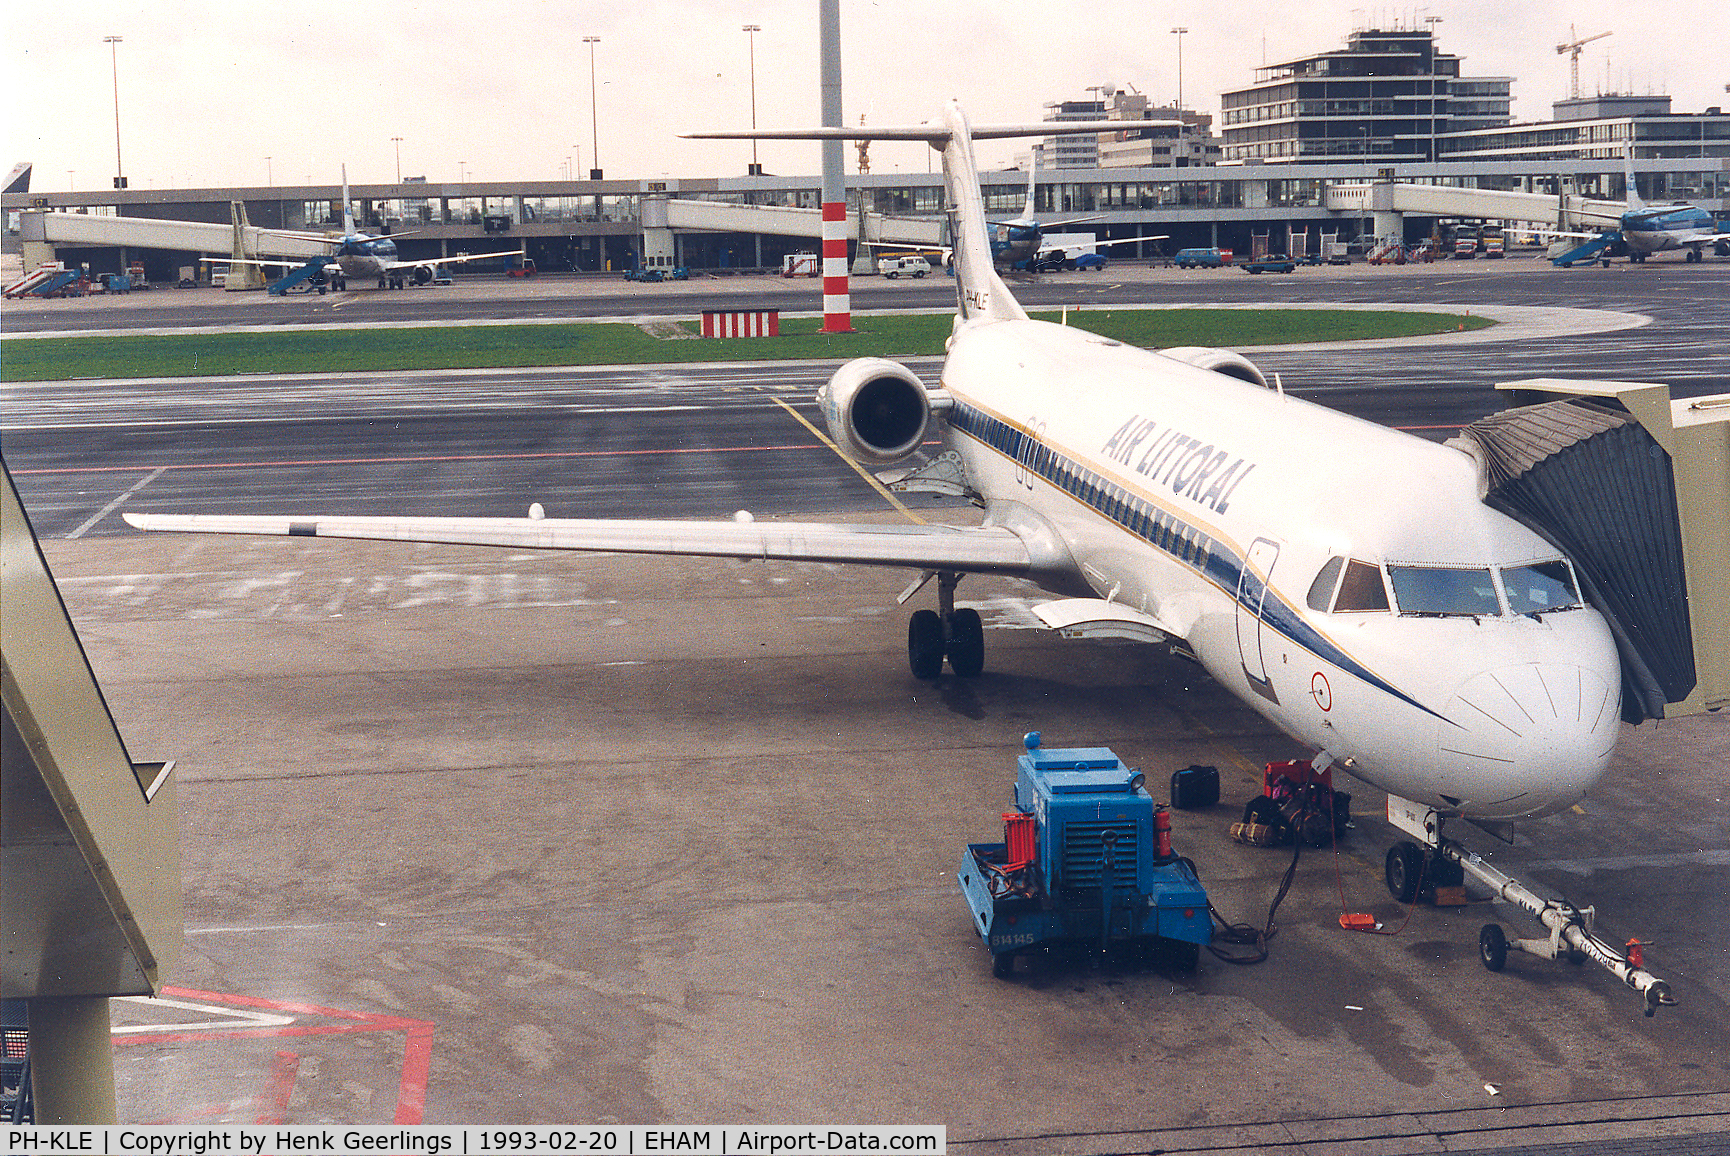 PH-KLE, 1989 Fokker 100 (F-28-0100) C/N 11270, Air Littoral